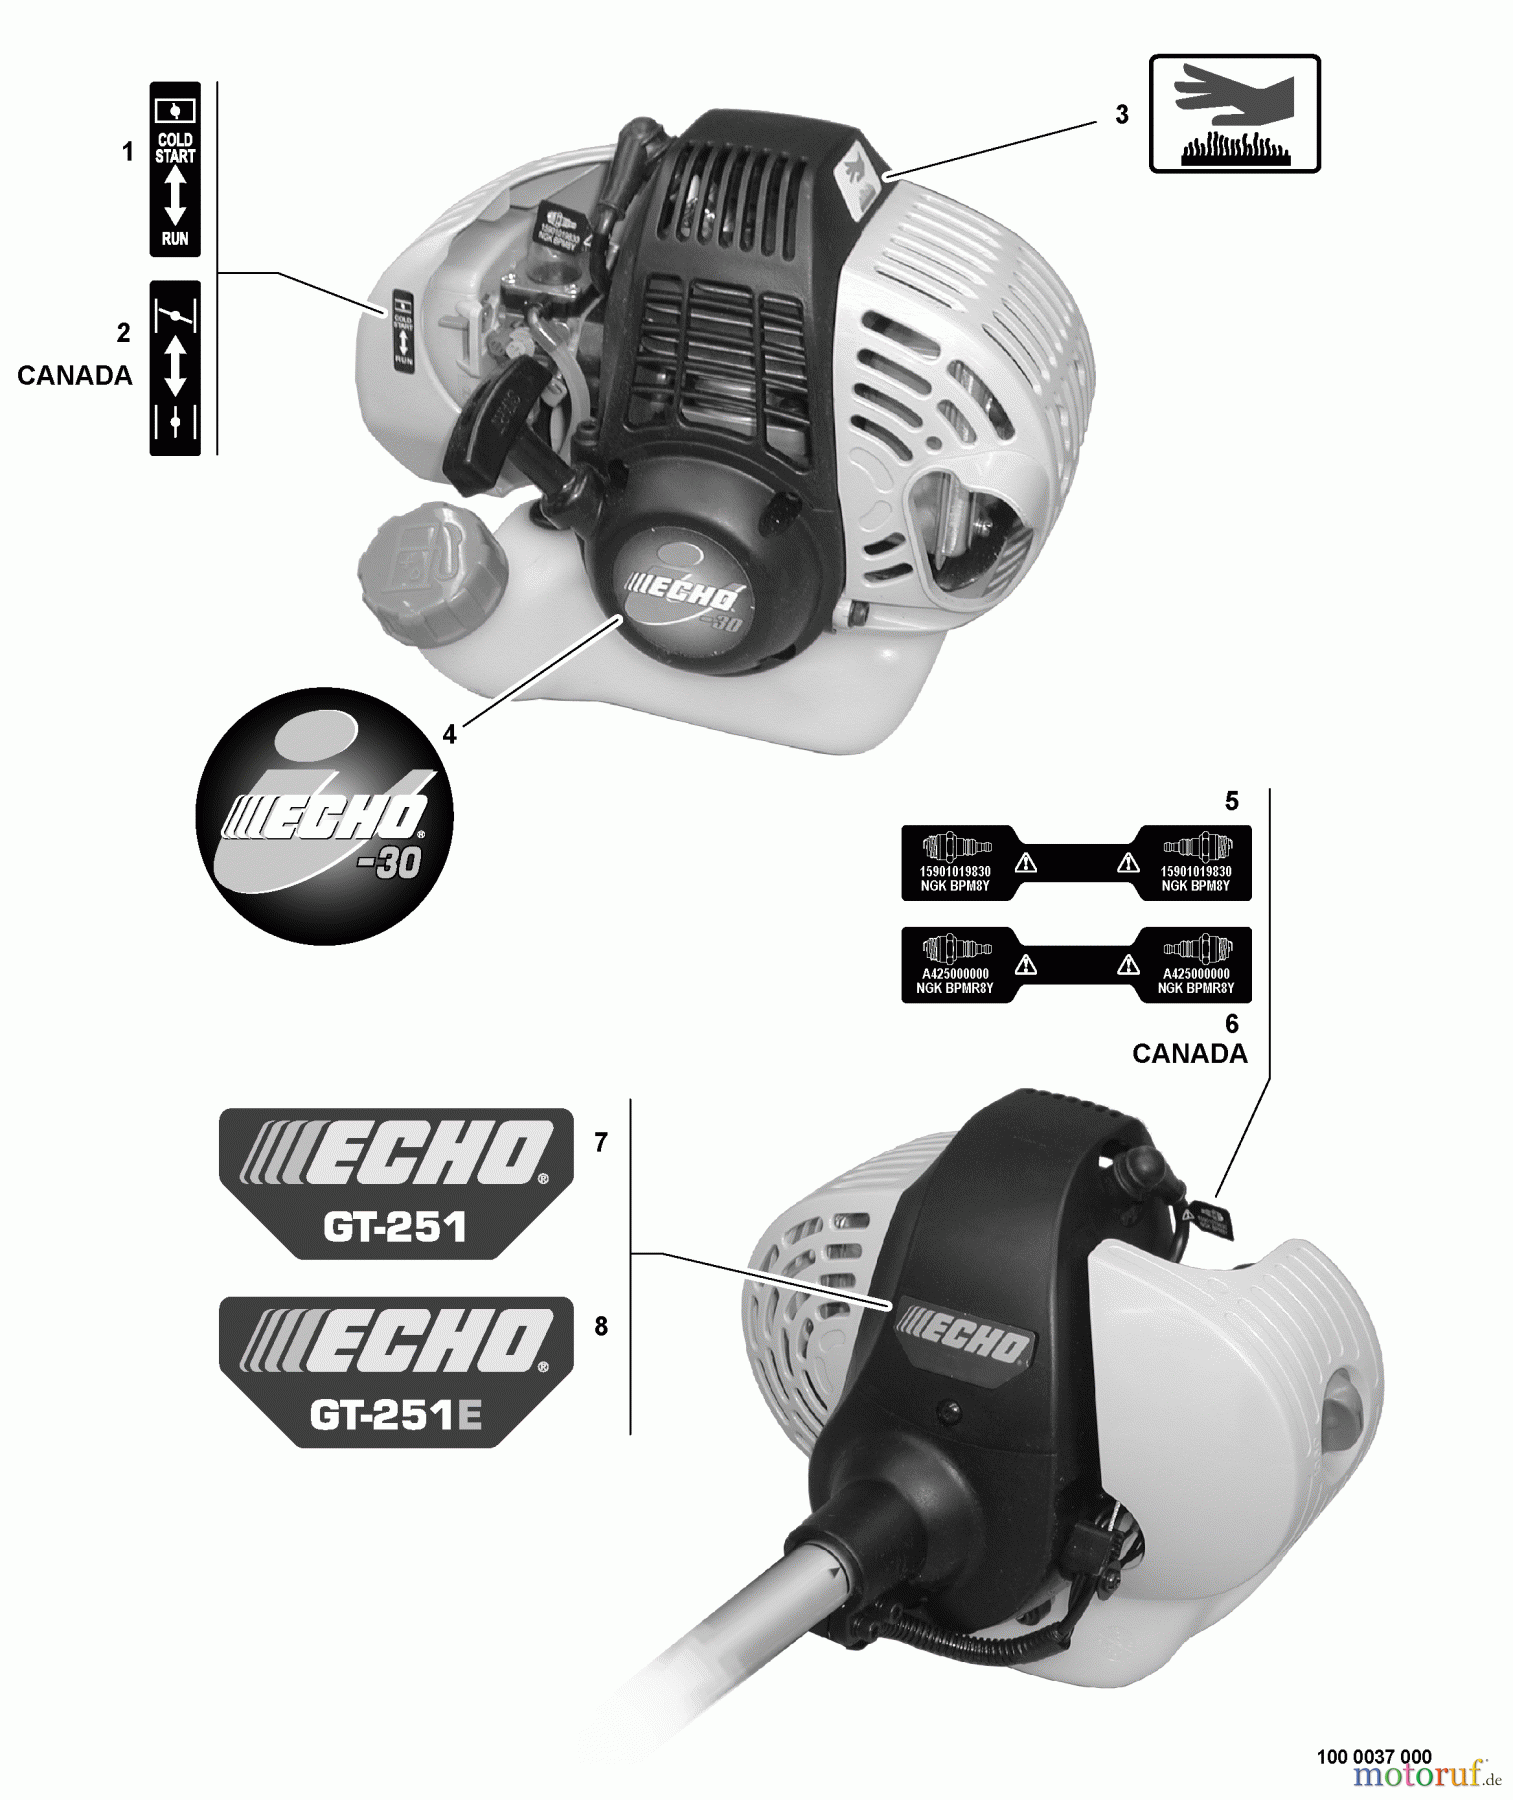  Echo Trimmer, Faden / Bürste GT-251E - Echo String Trimmer, S/N:08001001 - 08999999 Labels